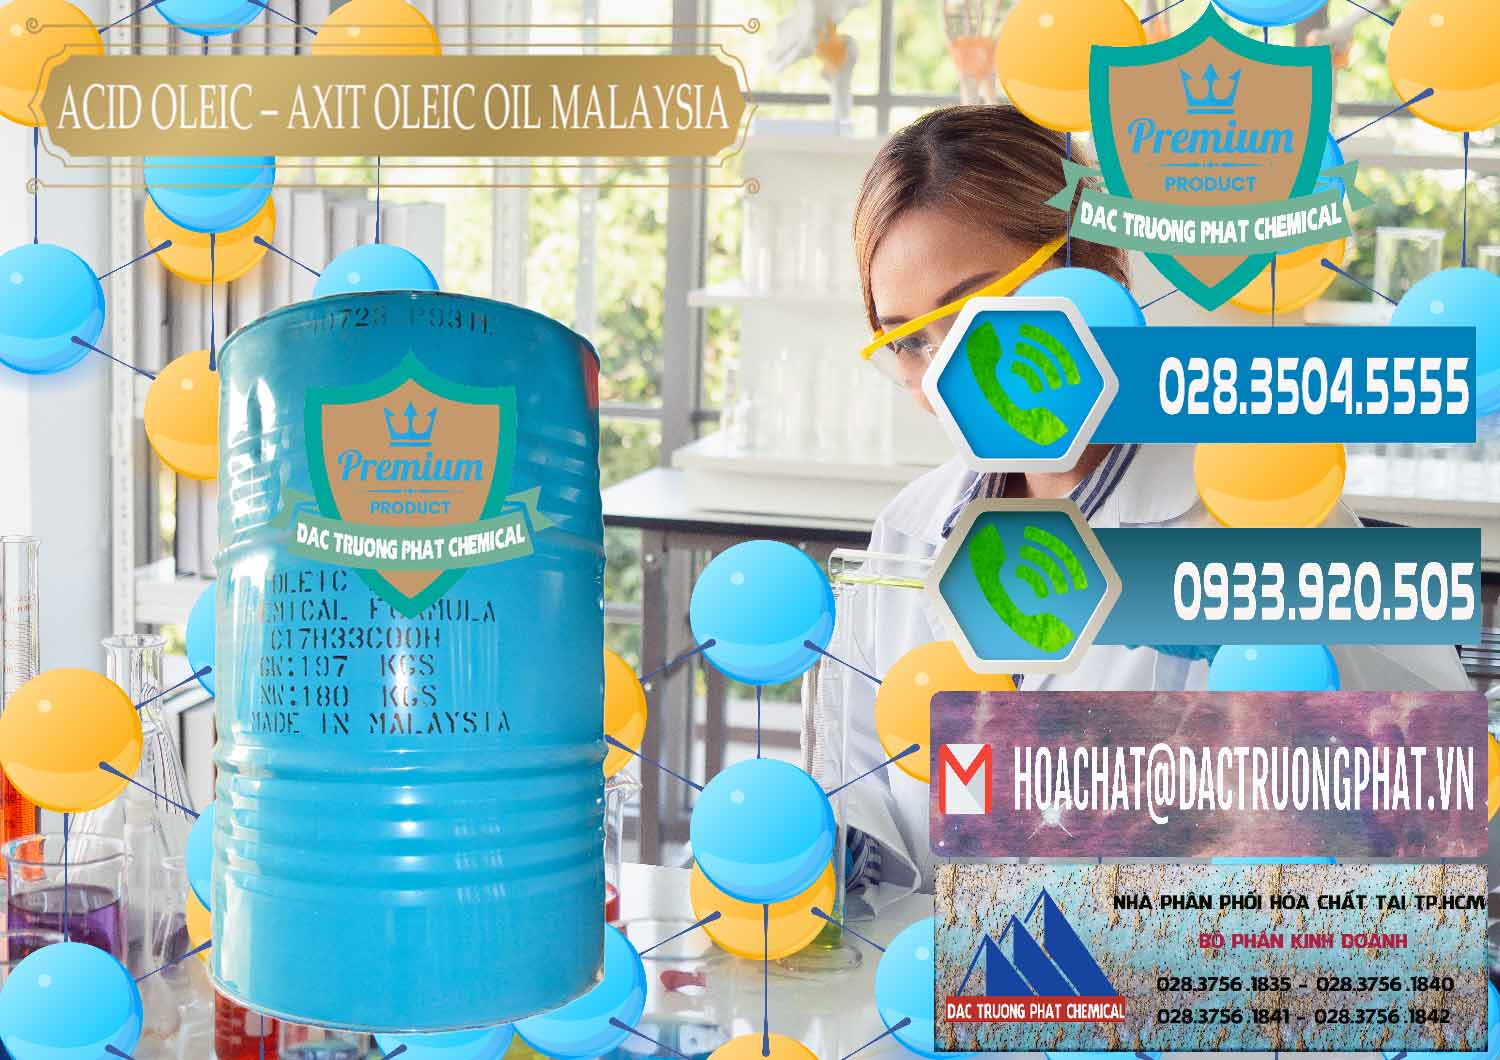 Cty chuyên bán ( phân phối ) Acid Oleic – Axit Oleic Oil Malaysia - 0013 - Đơn vị chuyên kinh doanh - phân phối hóa chất tại TP.HCM - congtyhoachat.net